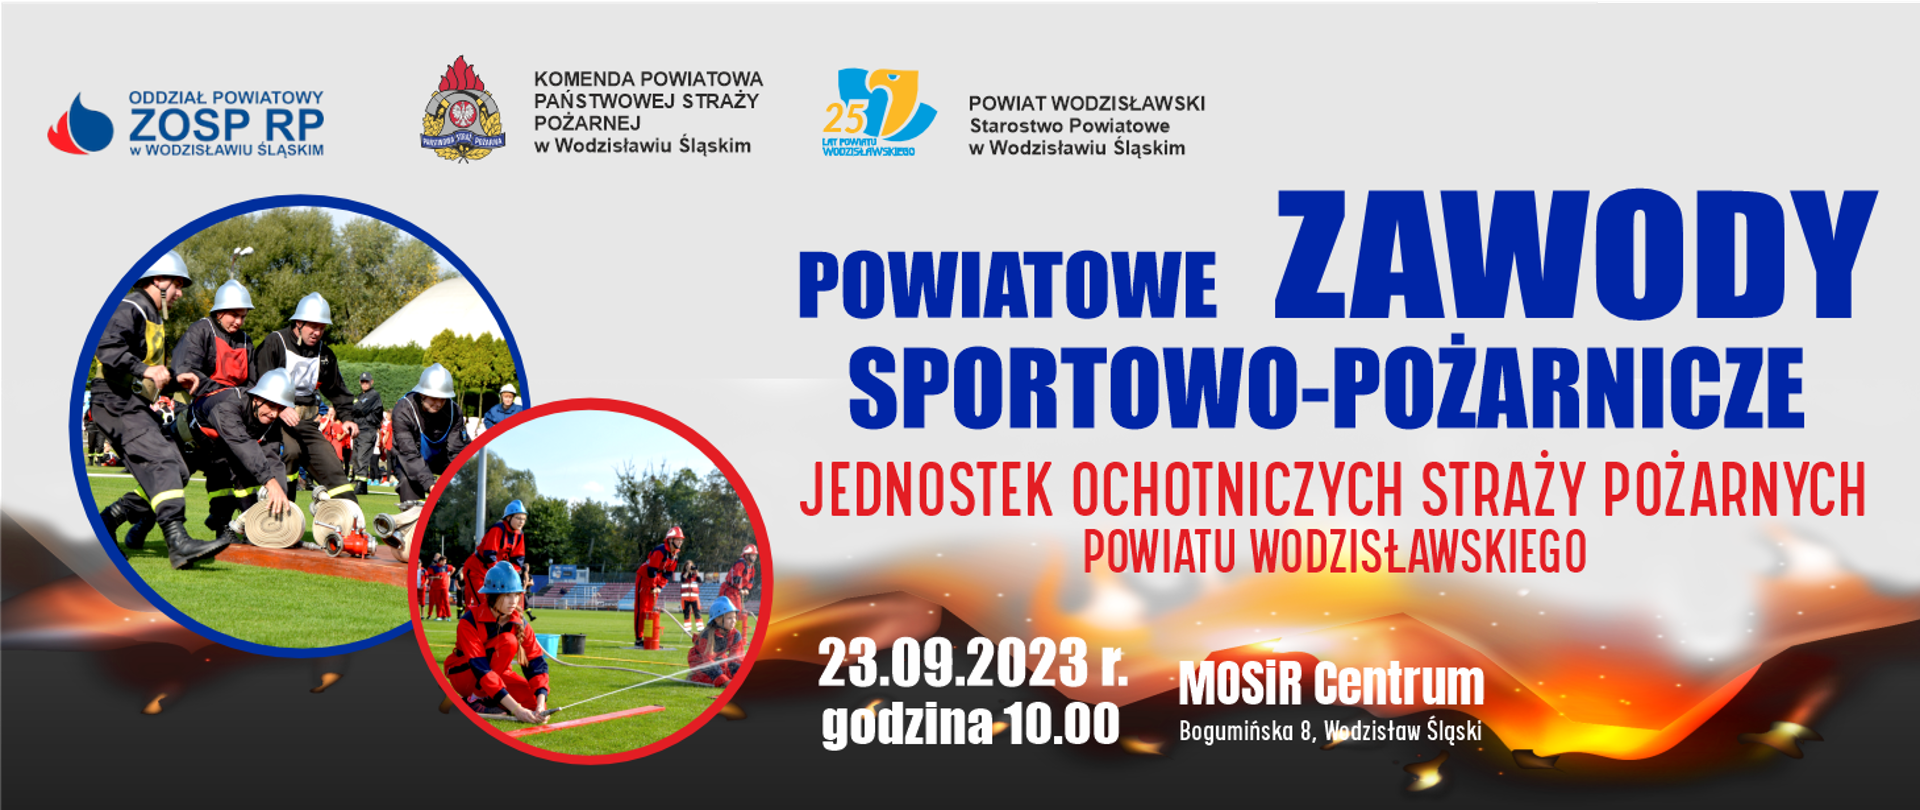 Banner Powiatowe Zawody Sportowo-Pożarnicze jednostek Ochotniczych Straży Pożarnych powiatu wodzisławskiego. 23 września 2023 roku, godzina 10:00